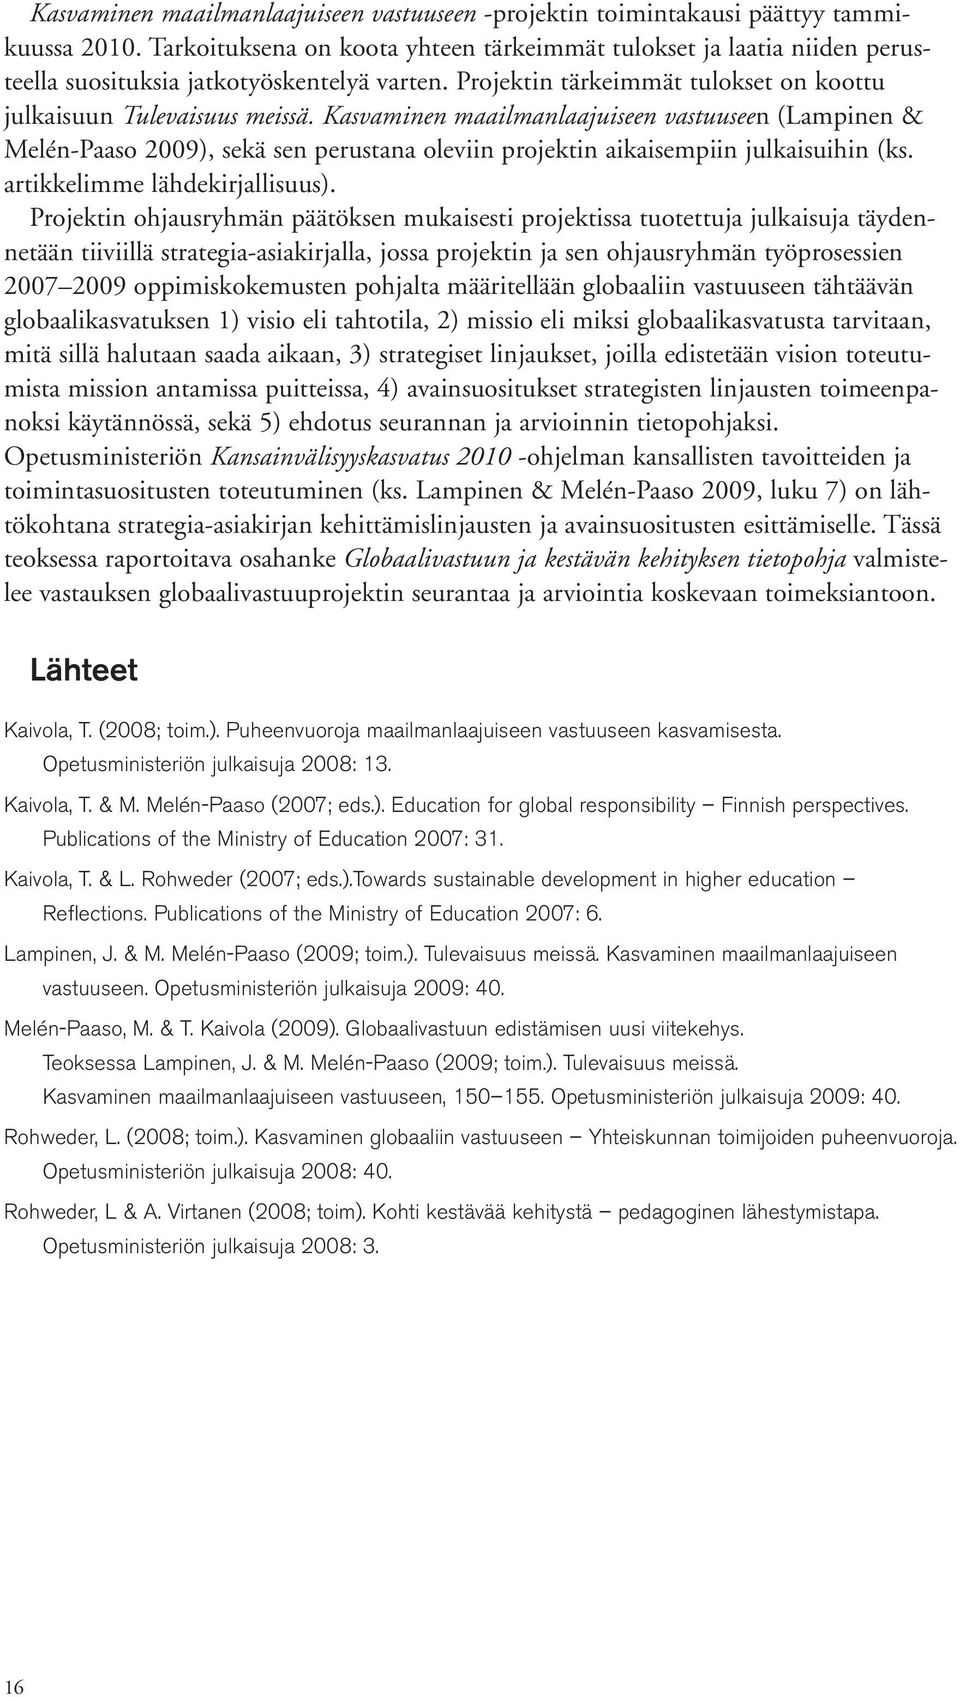 Kasvaminen maailmanlaajuiseen vastuuseen (Lampinen & Melén-Paaso 2009), sekä sen perustana oleviin projektin aikaisempiin julkaisuihin (ks. artikkelimme lähdekirjallisuus).